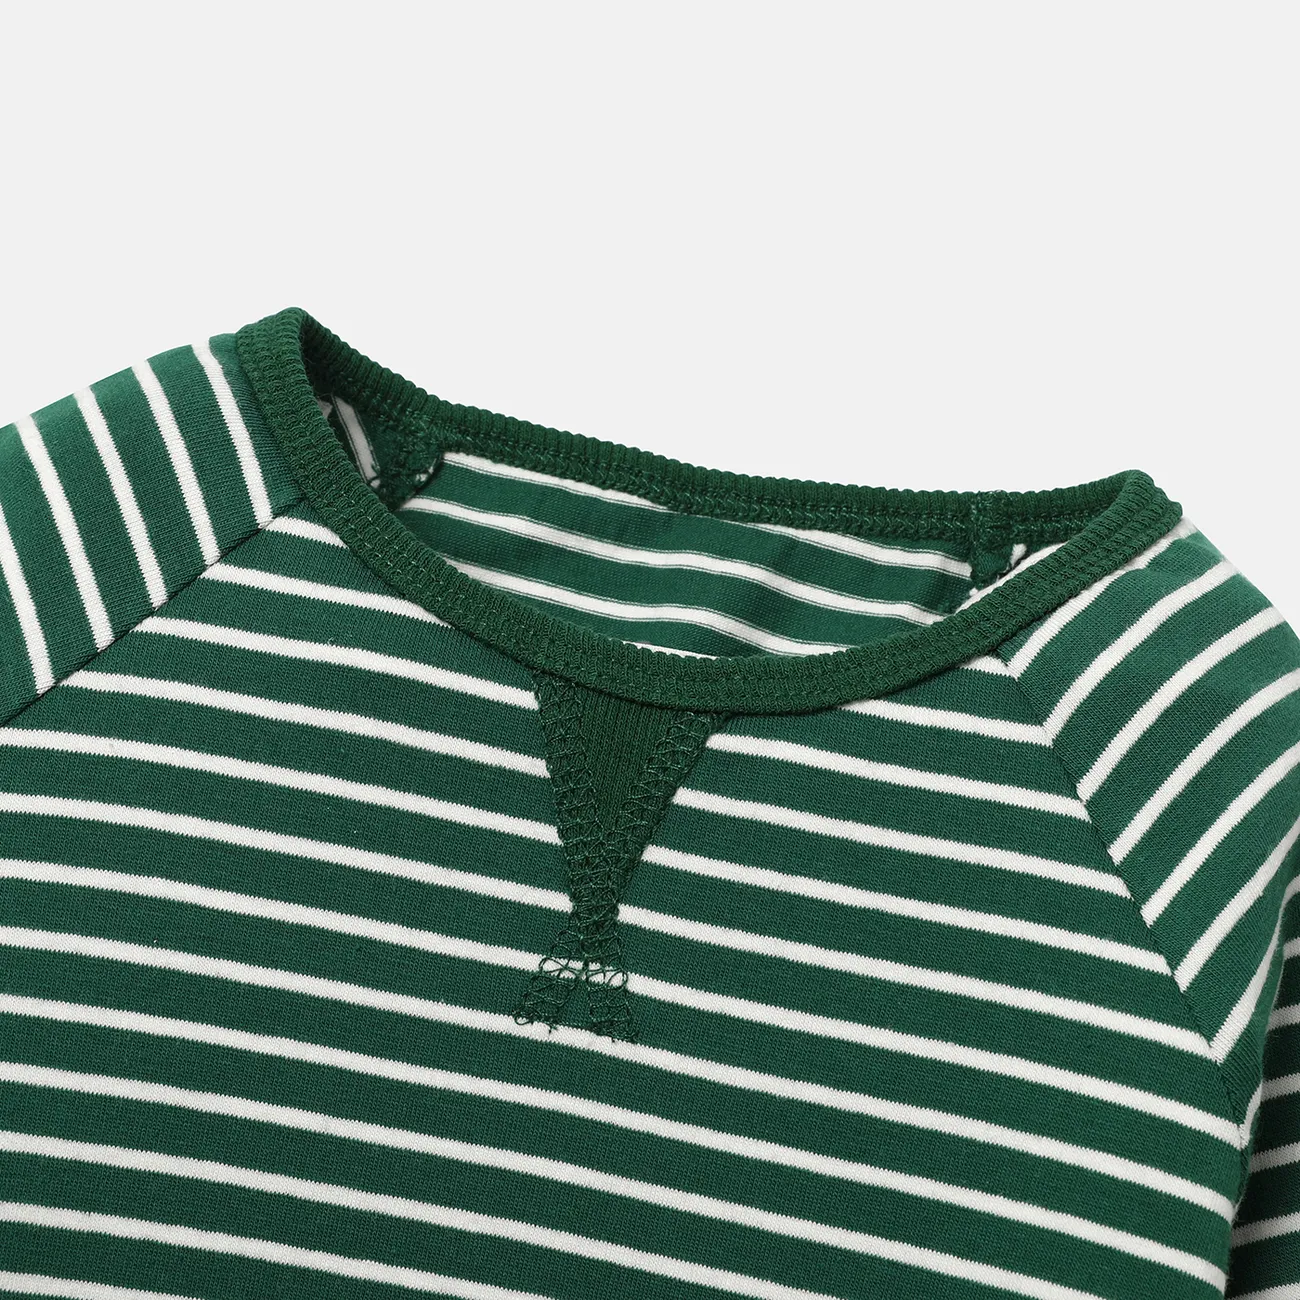 2pcs Baby/Toddler Stripe Raglan Sleeve Cotton Sweatshirt and Pants Set Green big image 1